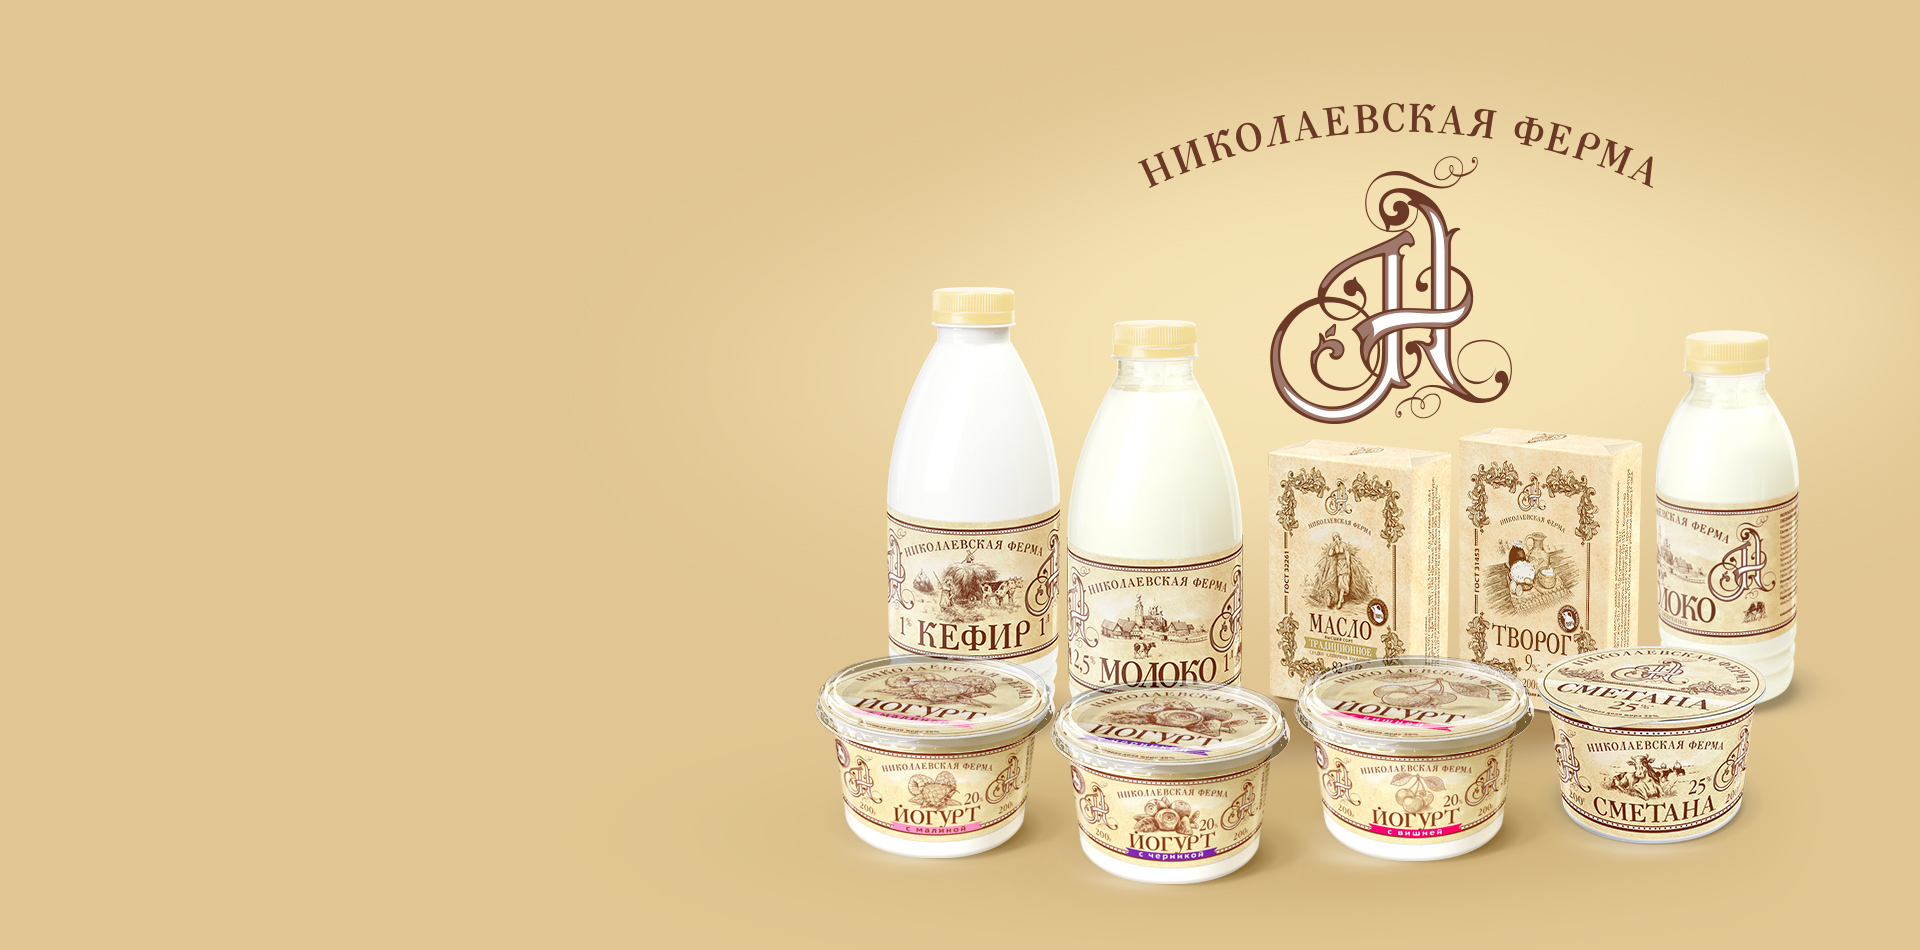 Иллюстрации для бренда молочной продукции